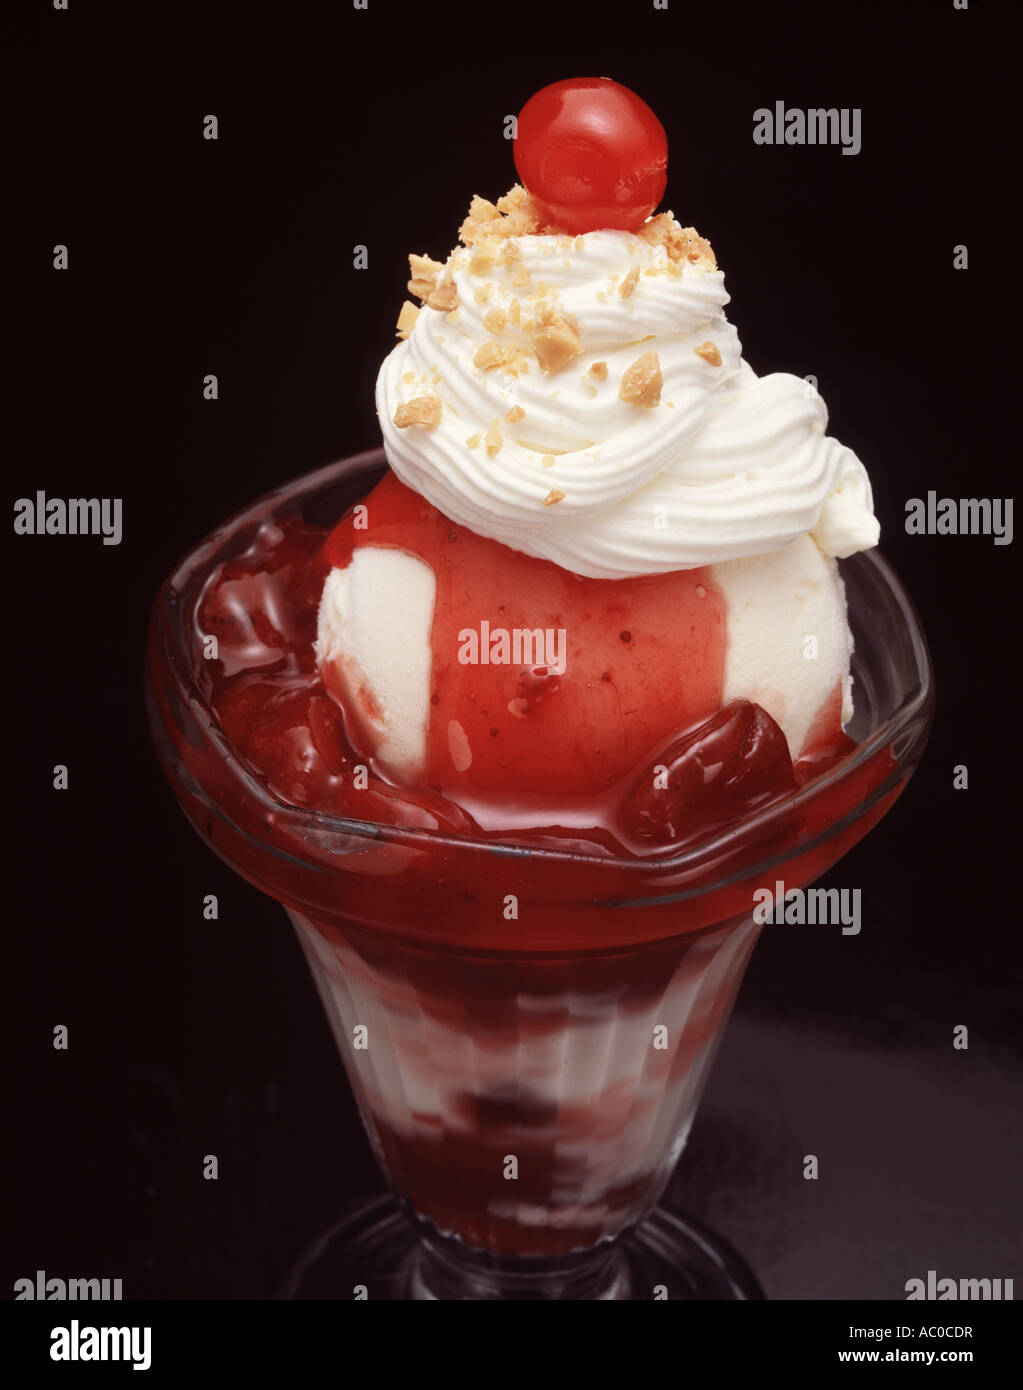 Close up strawberry ice cream sundae dimanche plat en verre crème fouettée saupoudrer de noix vanille sauce Banque D'Images